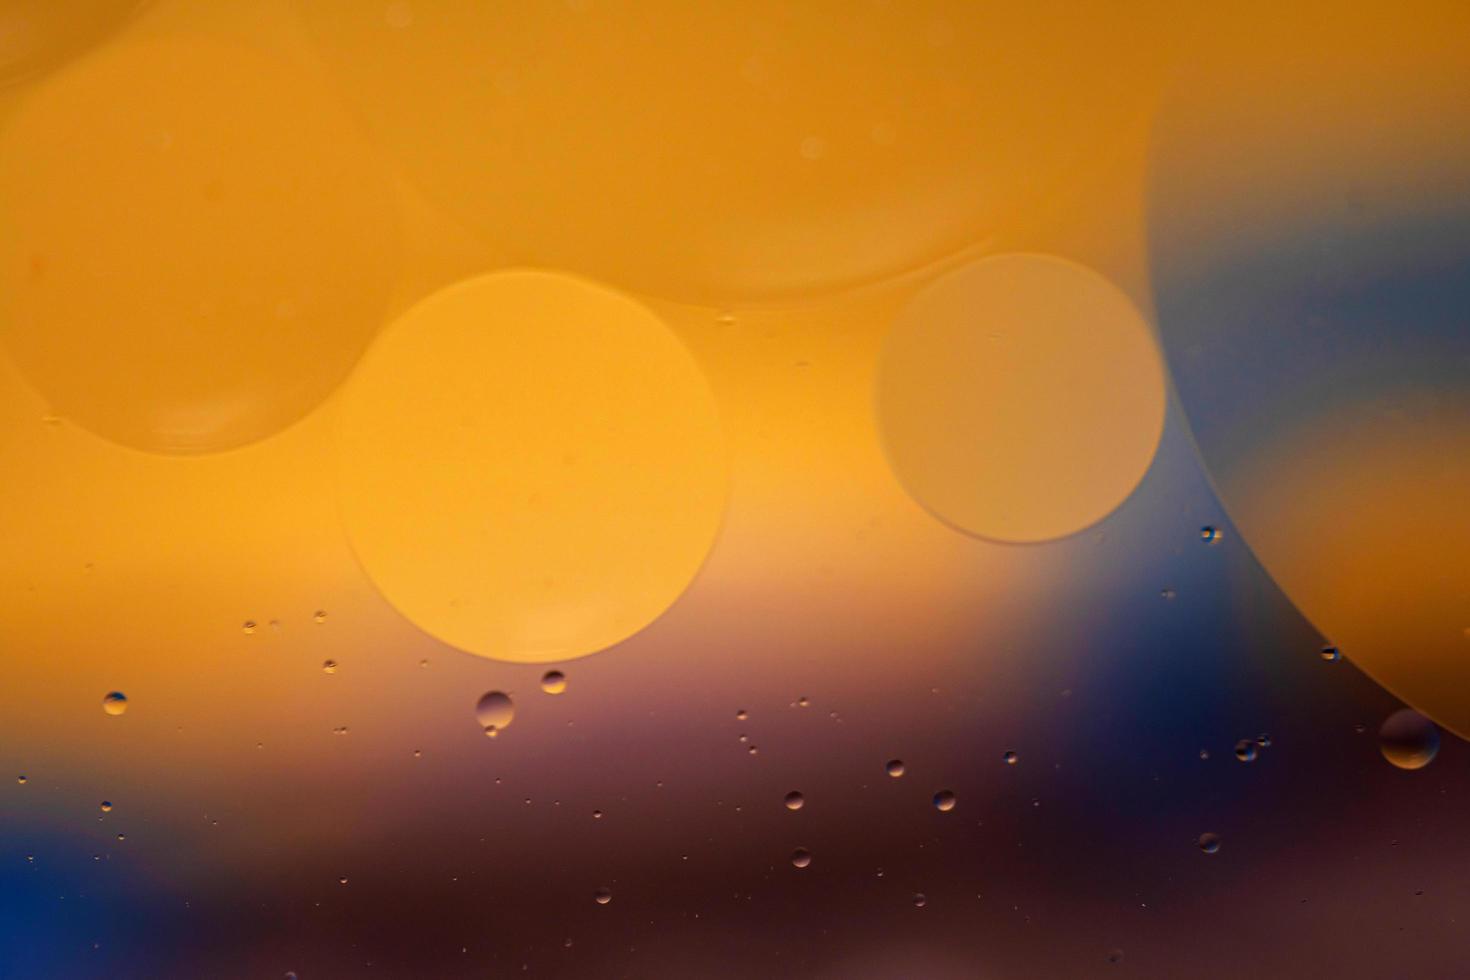 bolhas de óleo de gotas abstratas no fundo colorido da água, superfície de bolhas de óleo de macro fotografia foto